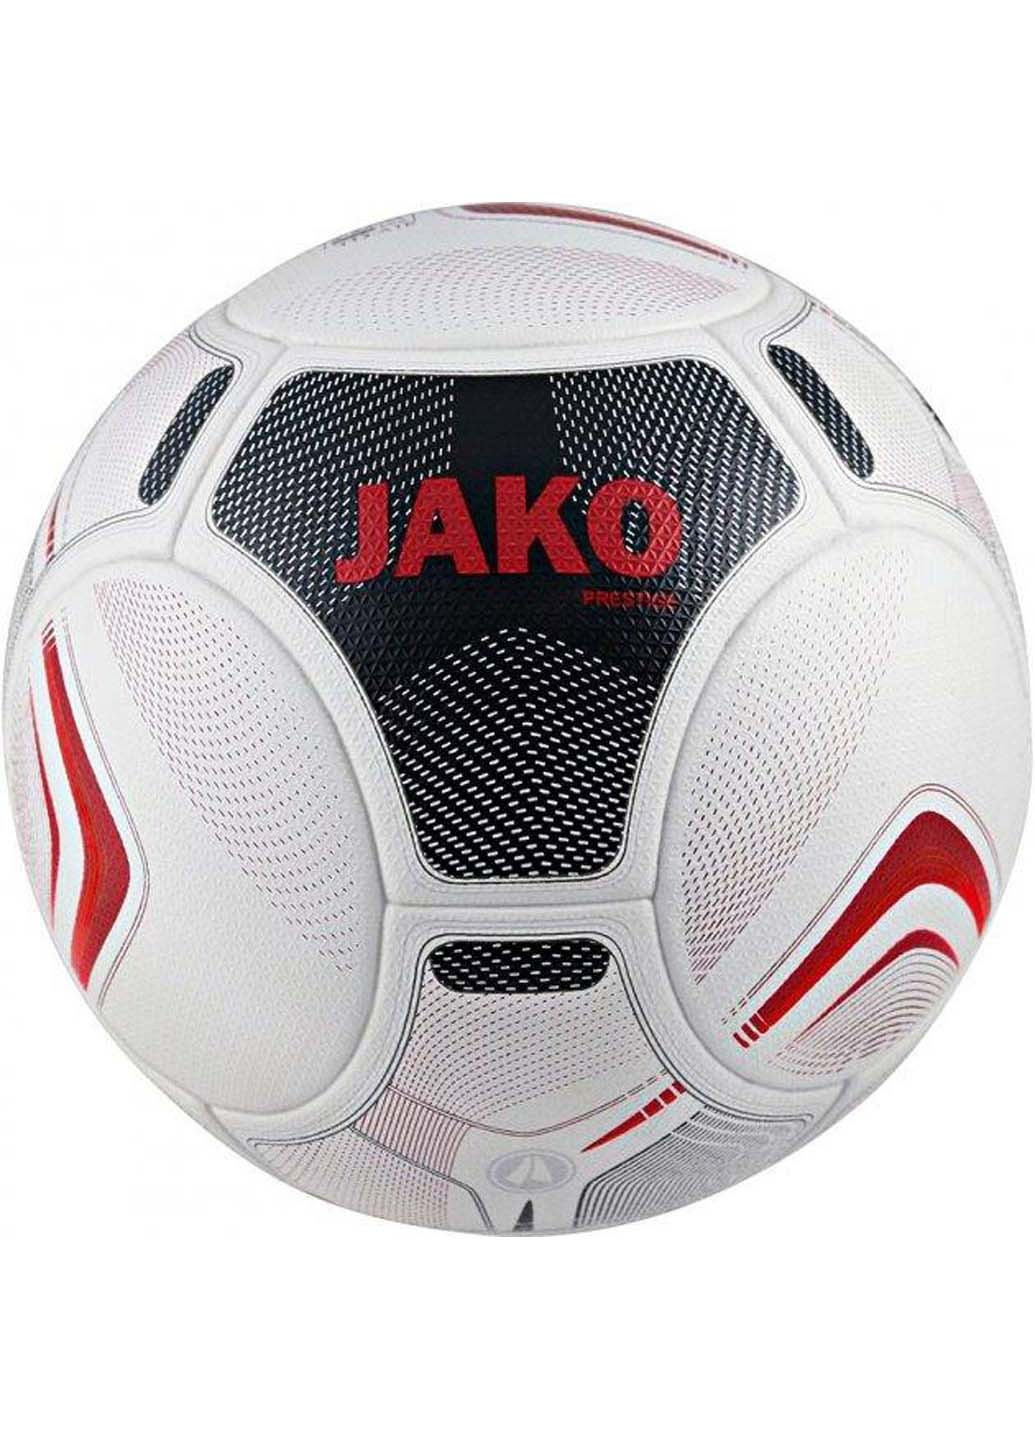 Мяч футбольный Fifa Prestige Qulity Pro Уни 5 Jako (257606982)